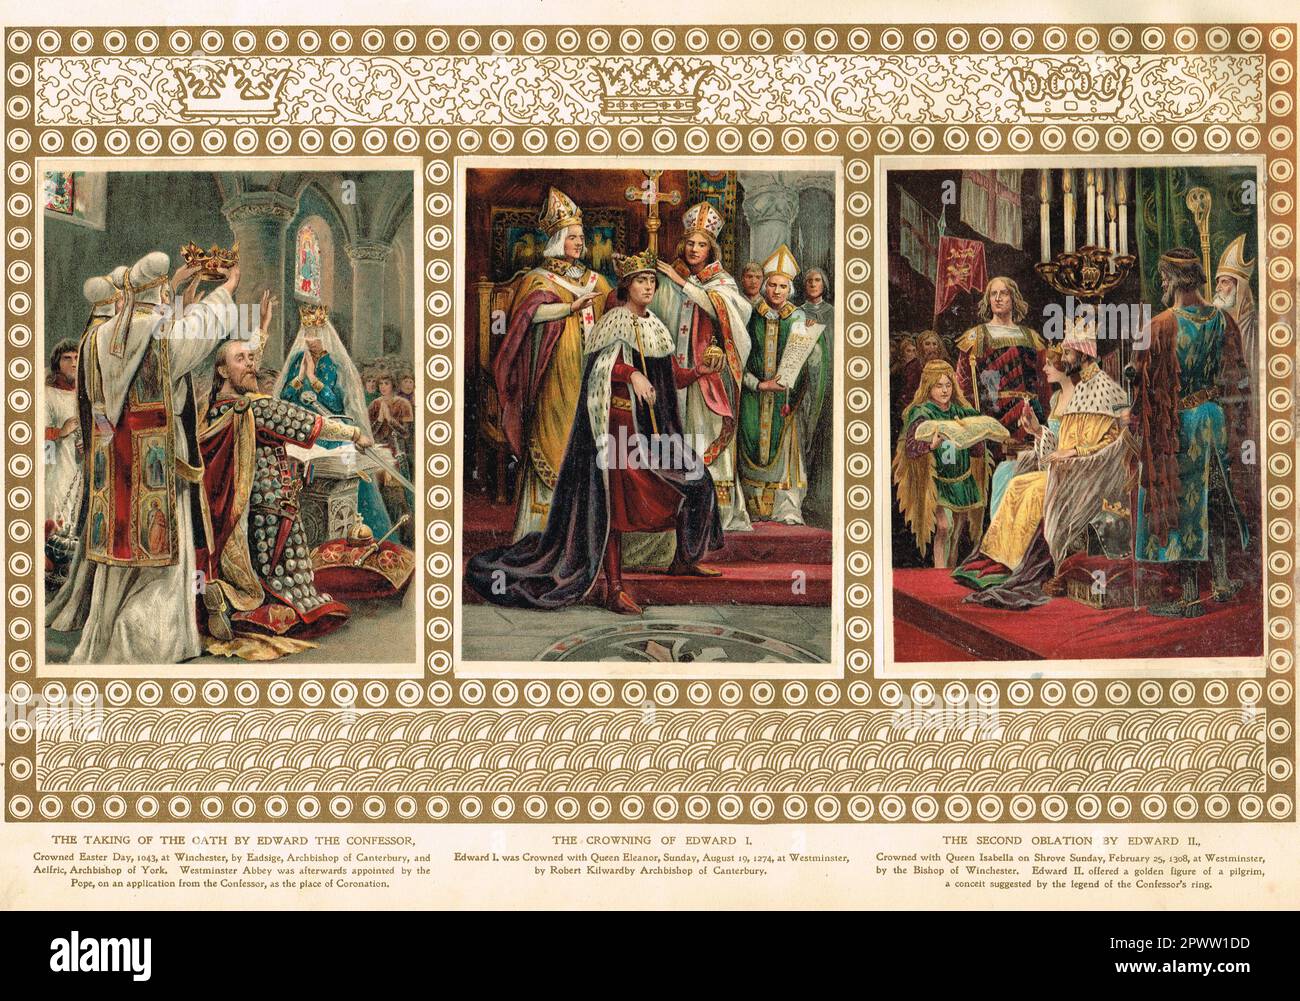 Illustrazioni delle incoronazioni di Edoardo il confessore, Edoardo i ed Edoardo II in 1043, 1274 e 1308 Foto Stock